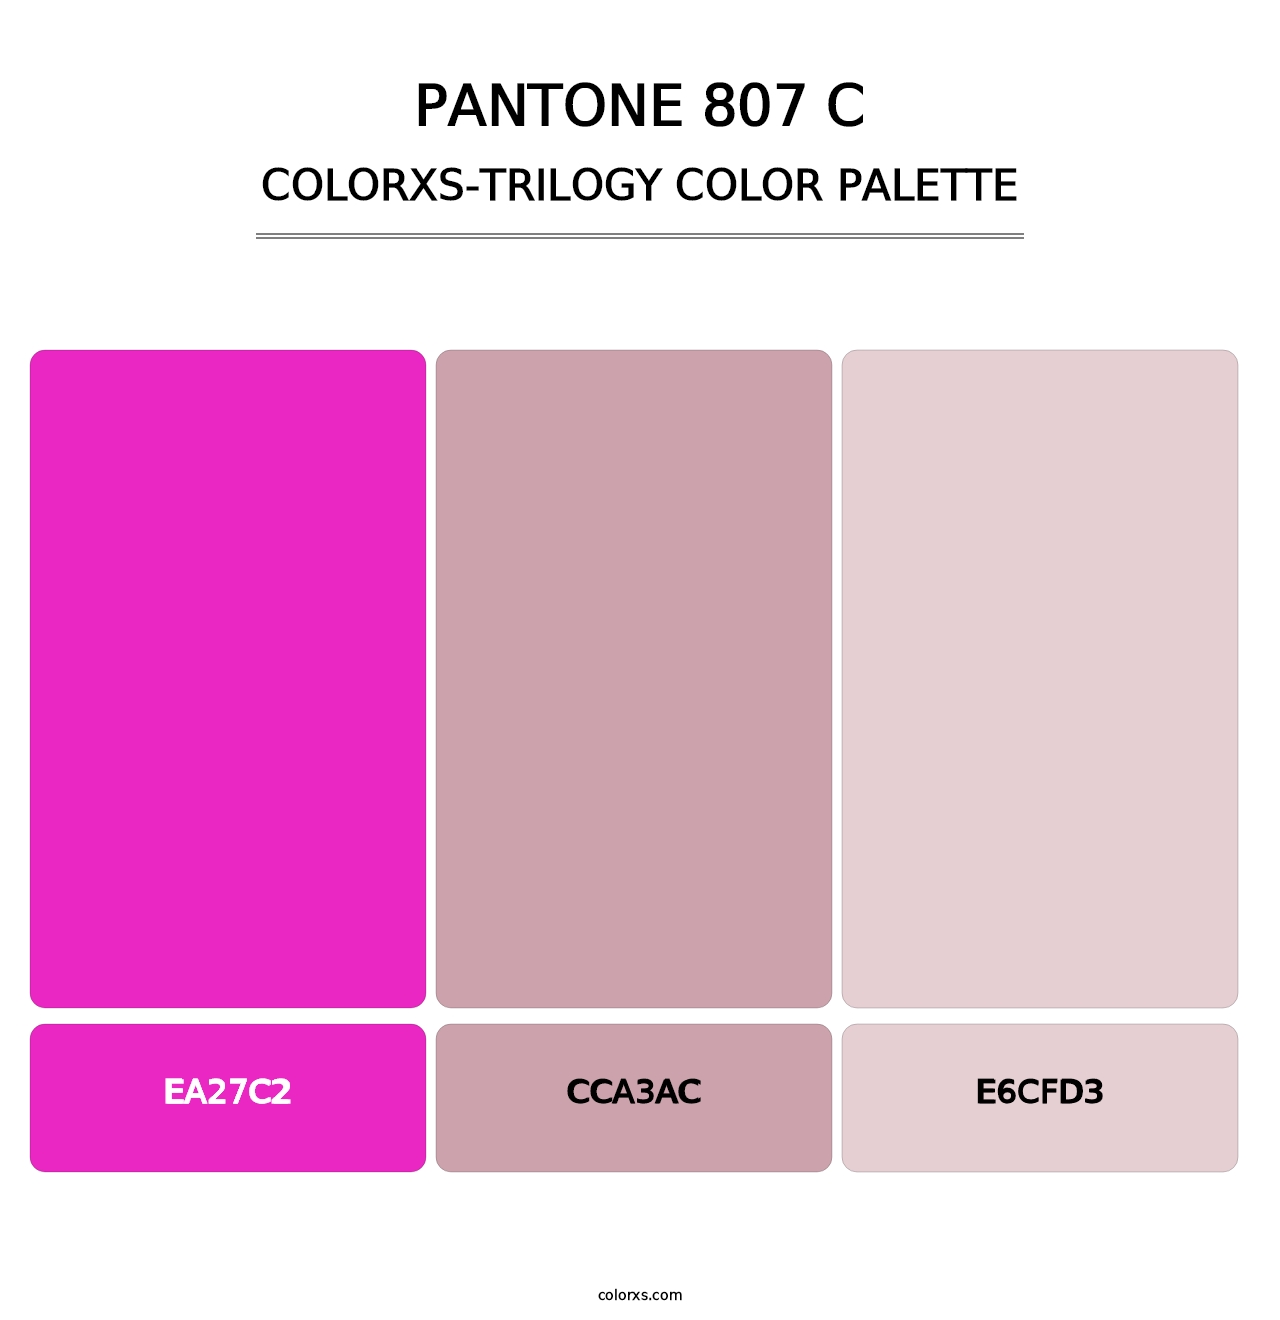 PANTONE 807 C - Colorxs Trilogy Palette